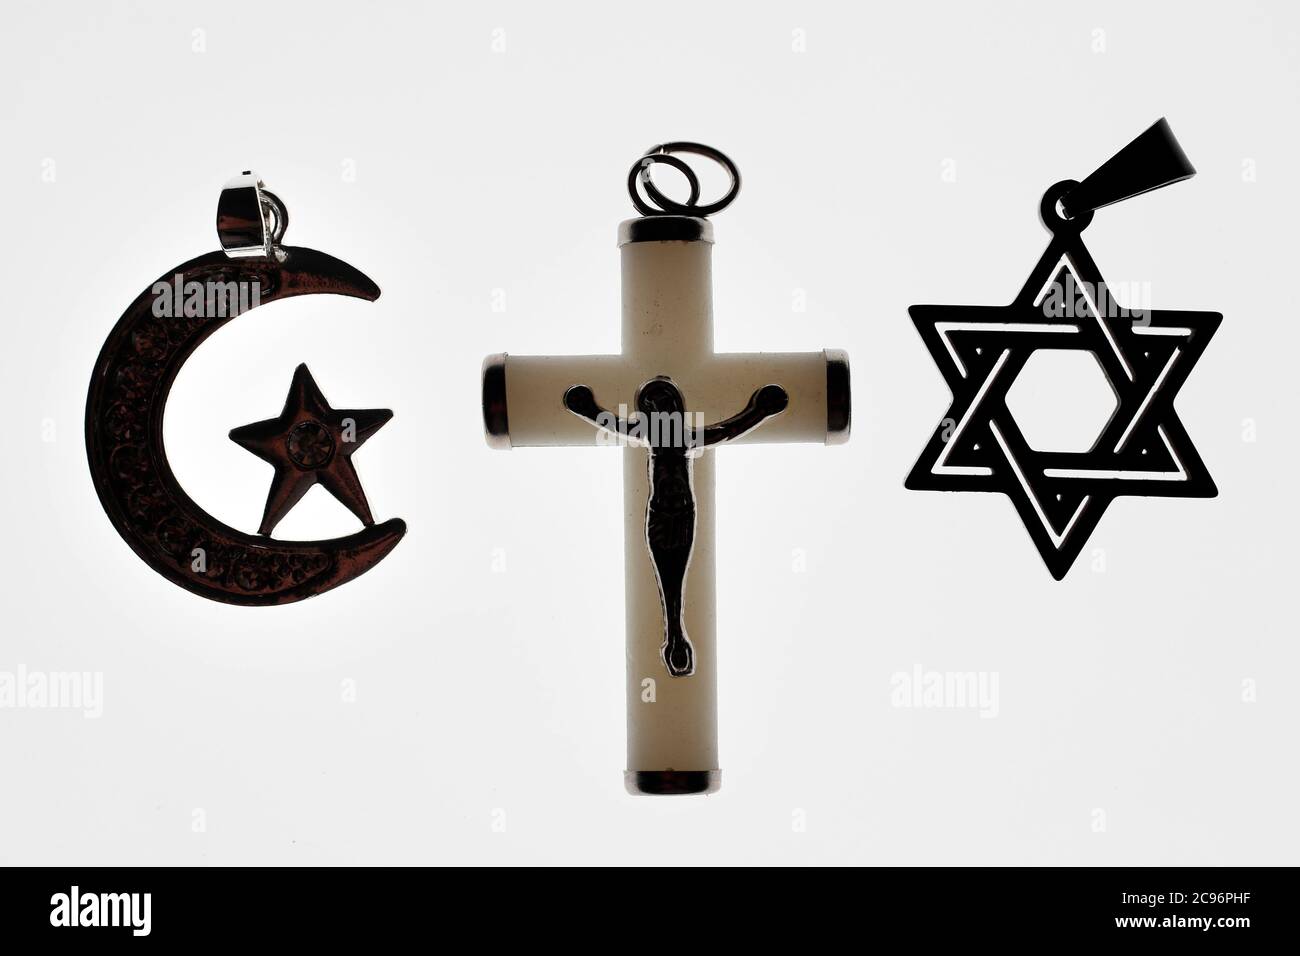 s-mbolos-religiosos-cristianismo-islam-juda-smo-3-religiones